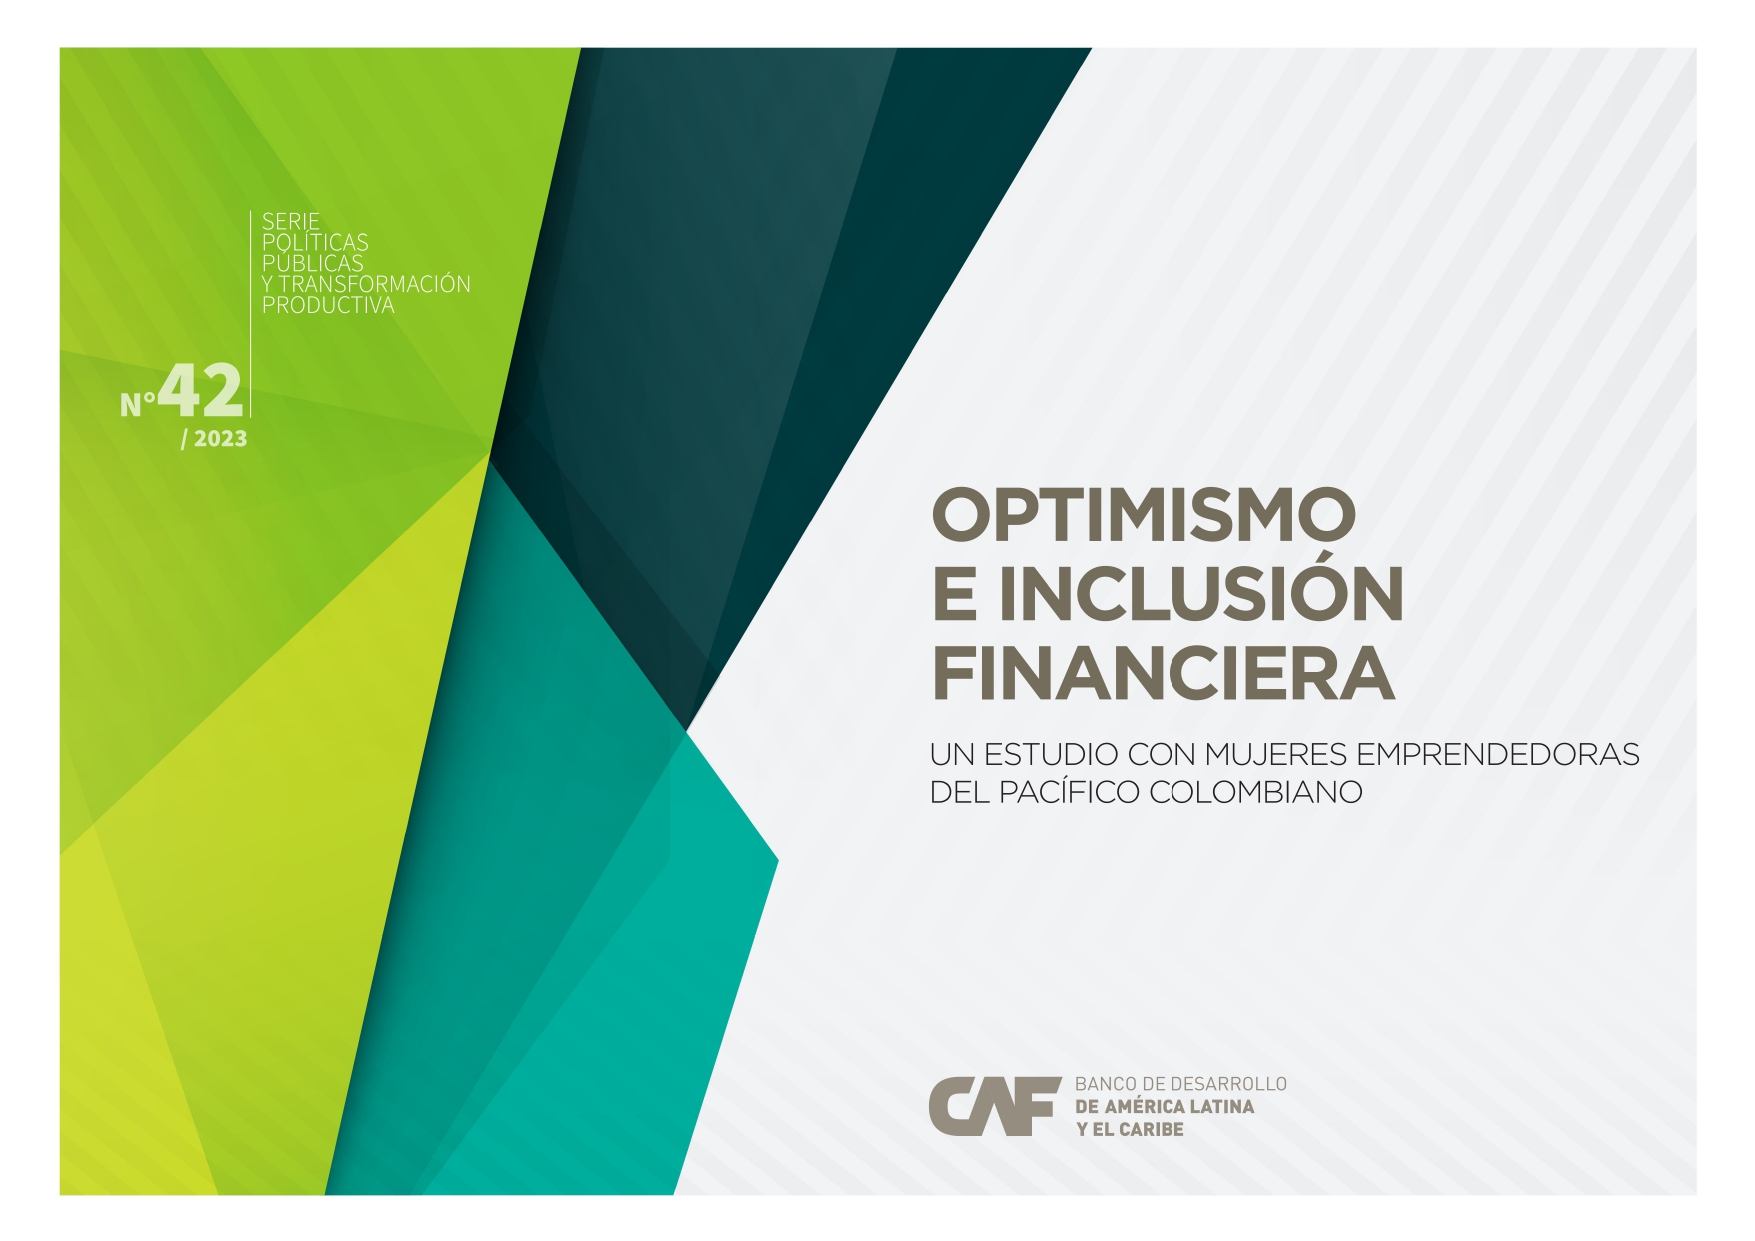 Optimismo e inclusión financiera: un estudio con mujeres emprendedoras del pacífico colombiano